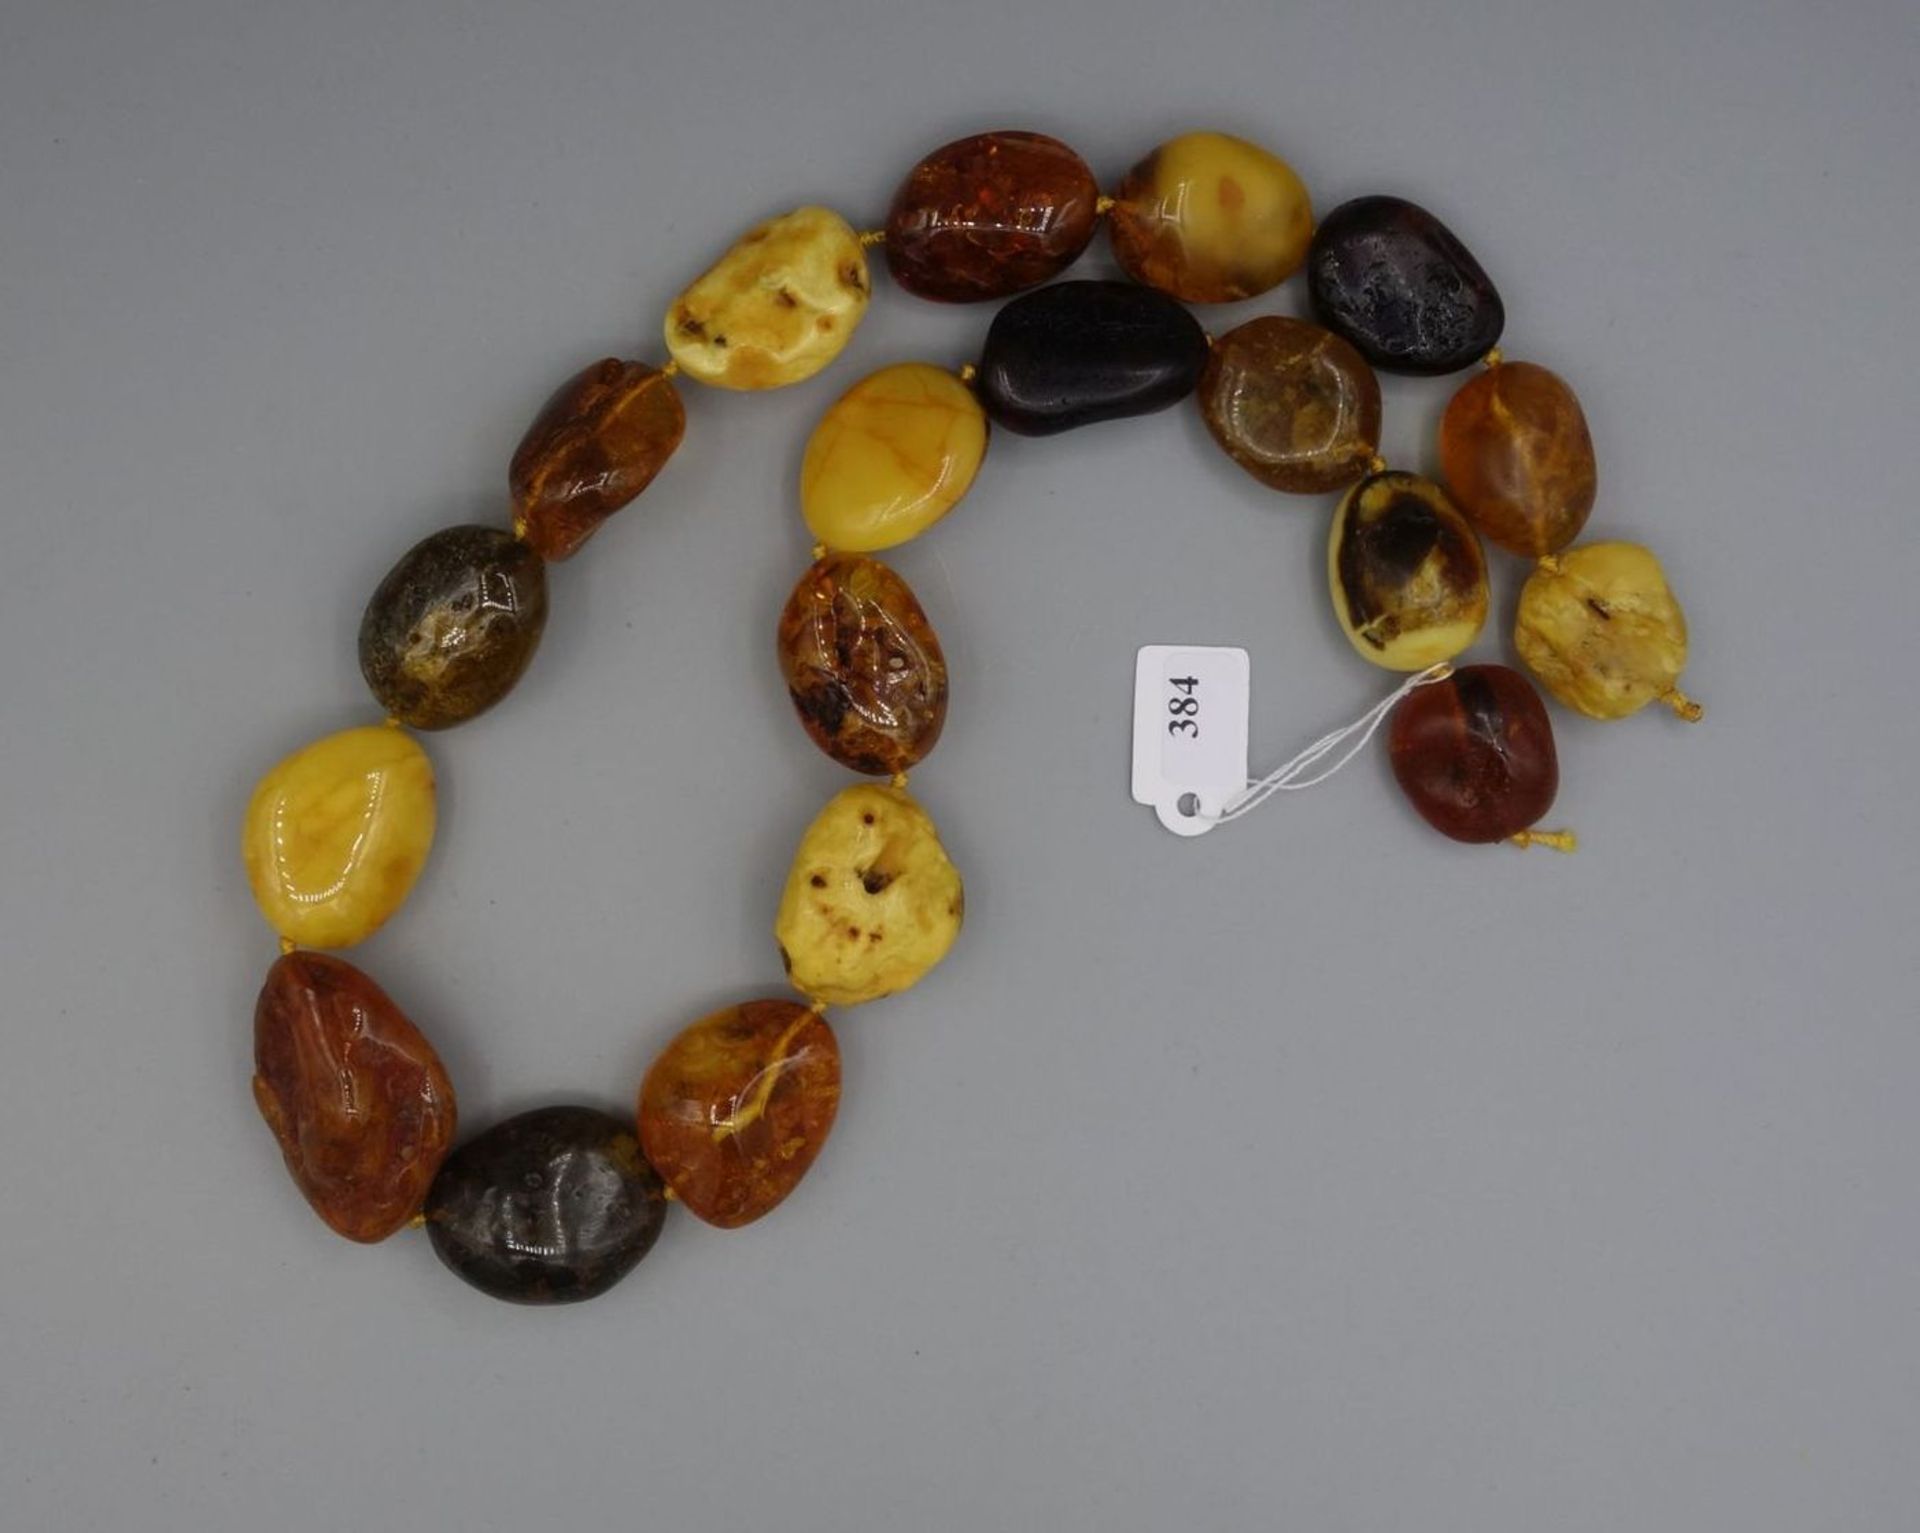 BERNSTEINKETTE / - STRANG / amber necklace, mit 19 Steinen unterschiedliche Farbigkeit, Form und